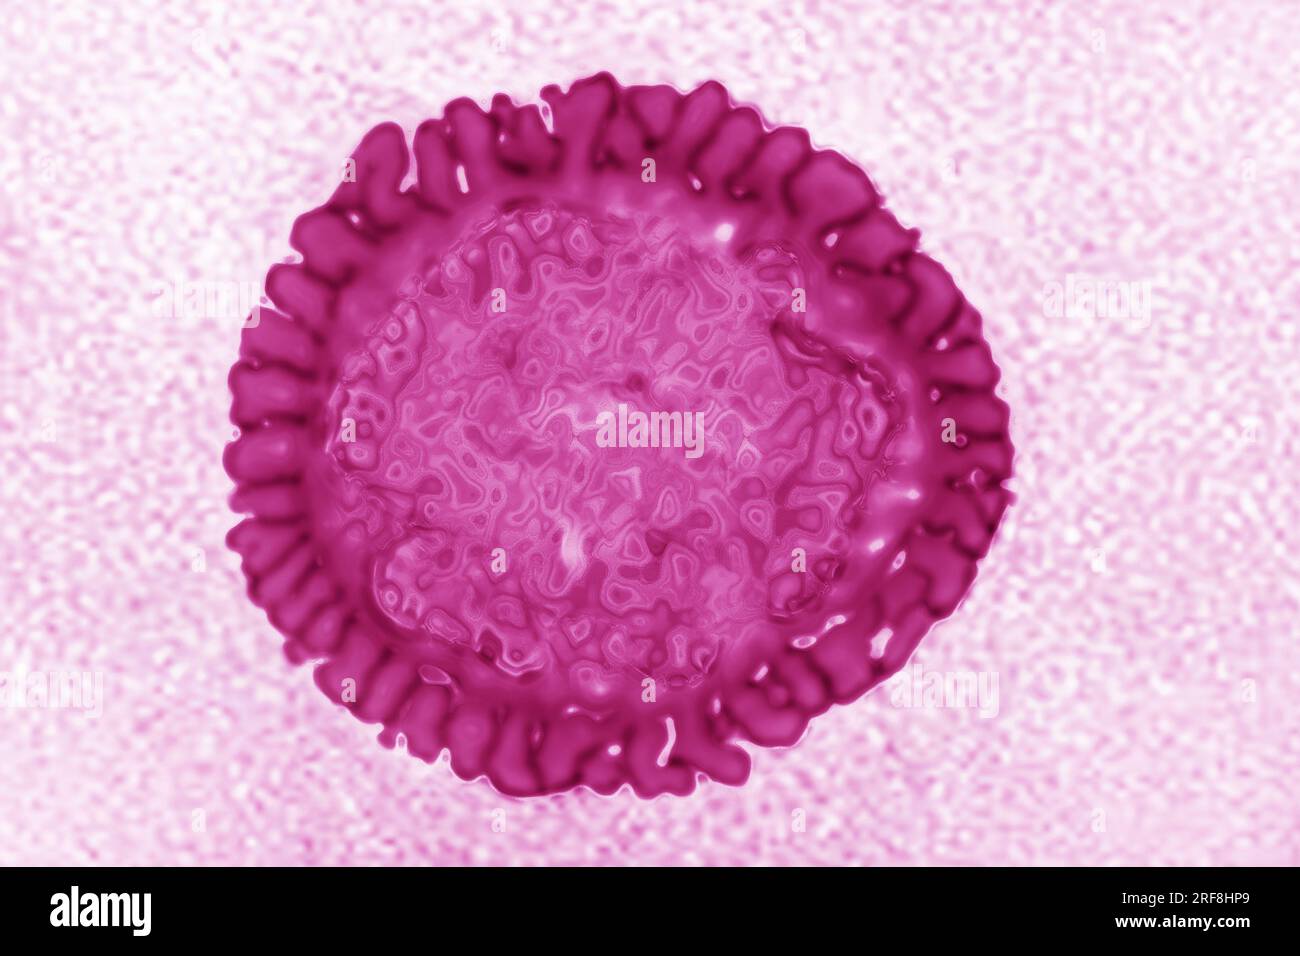 Influenzavirus der Familie der Orthomyxoviridae (respiratorische Virusinfektion). Transmissionselektronenmikroskopie, Virusdurchmesser 80 bis 120 Nanometer. Stockfoto